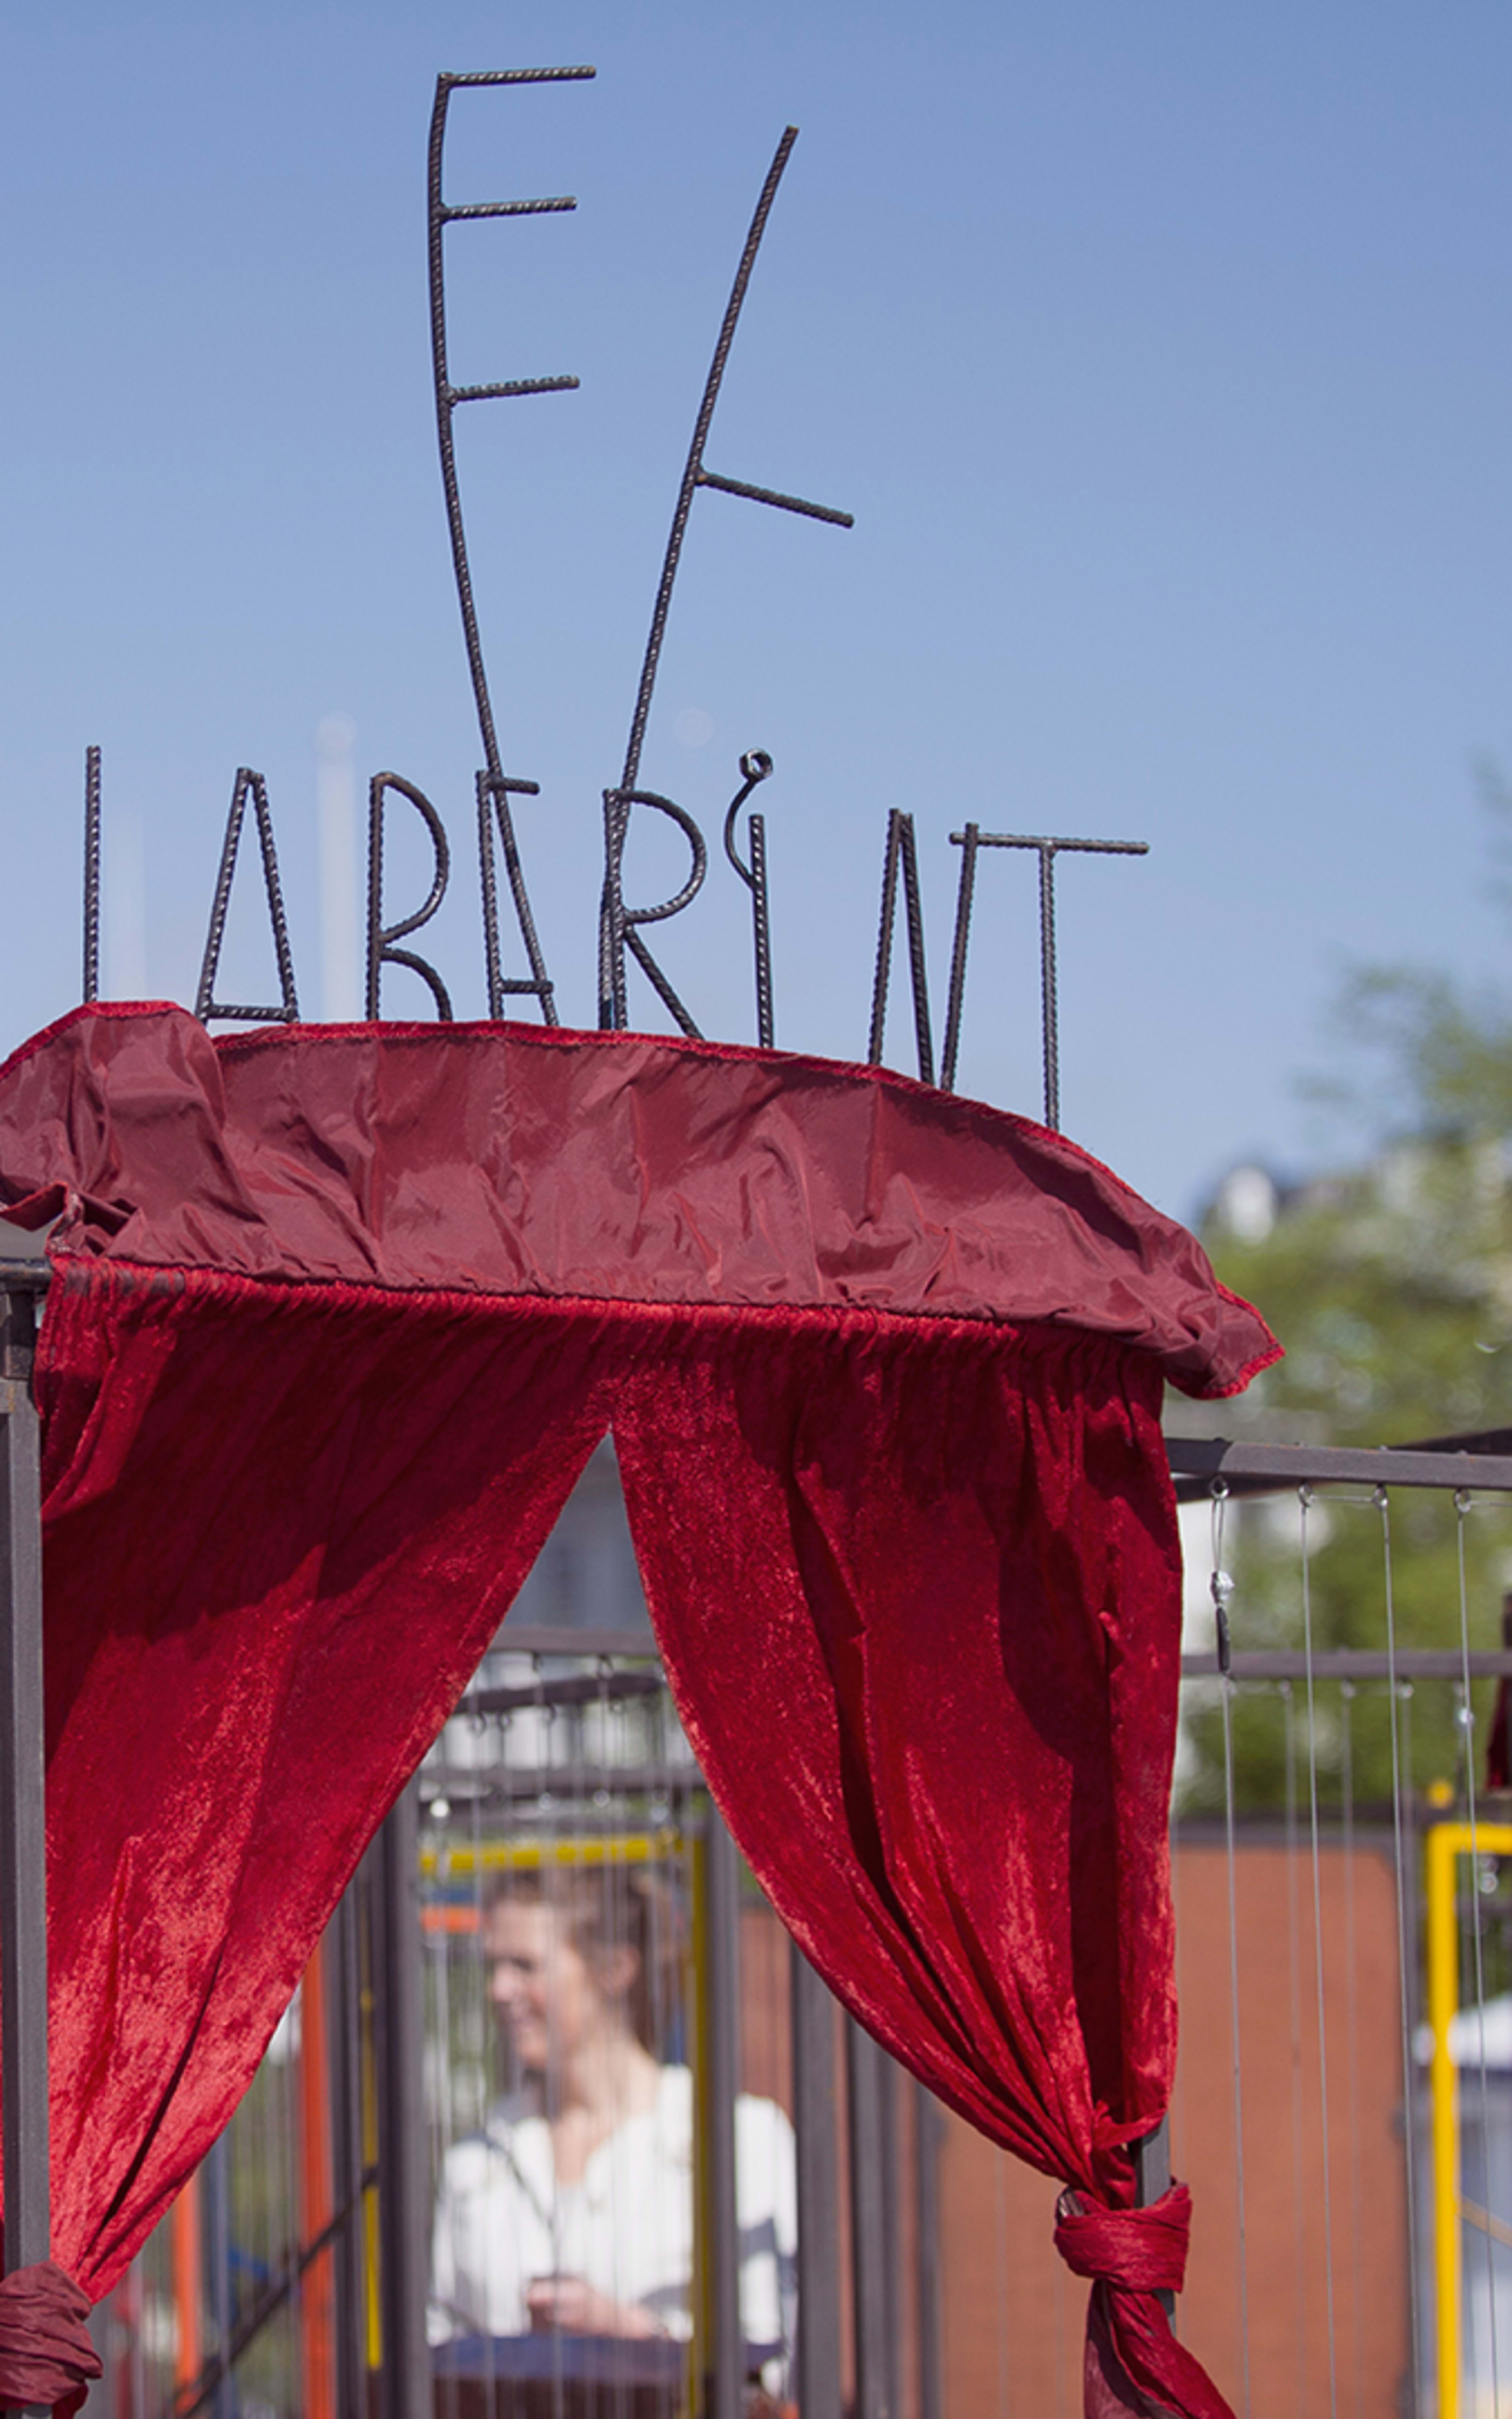 El Laberint - Festival square